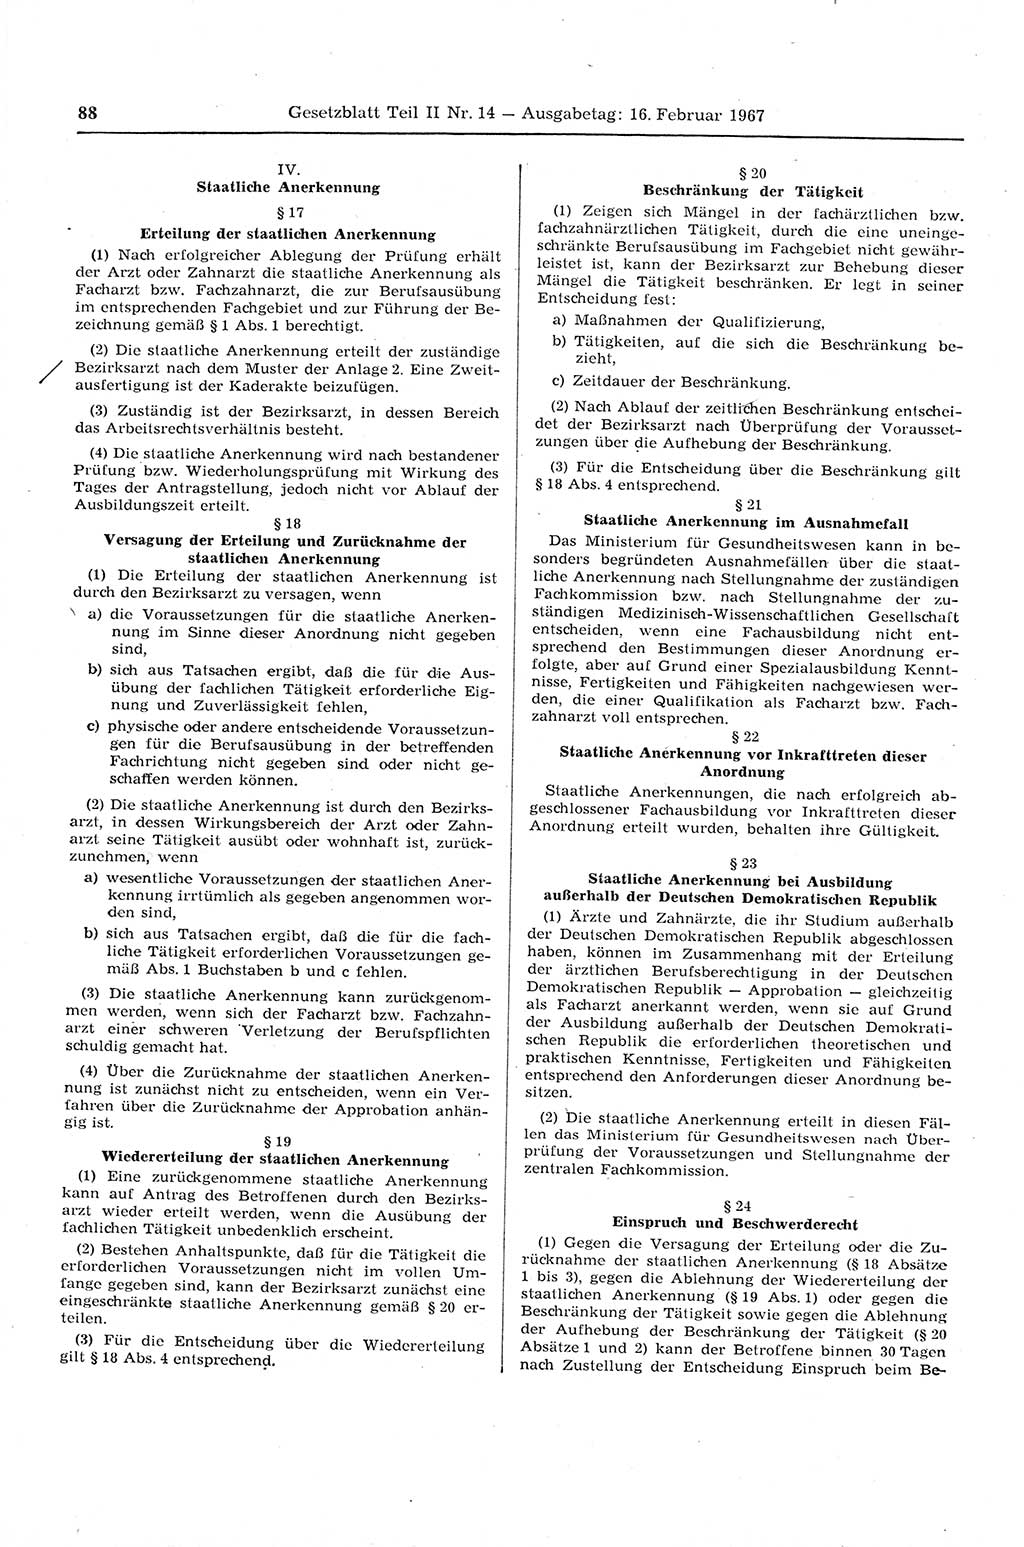 Gesetzblatt (GBl.) der Deutschen Demokratischen Republik (DDR) Teil ⅠⅠ 1967, Seite 88 (GBl. DDR ⅠⅠ 1967, S. 88)